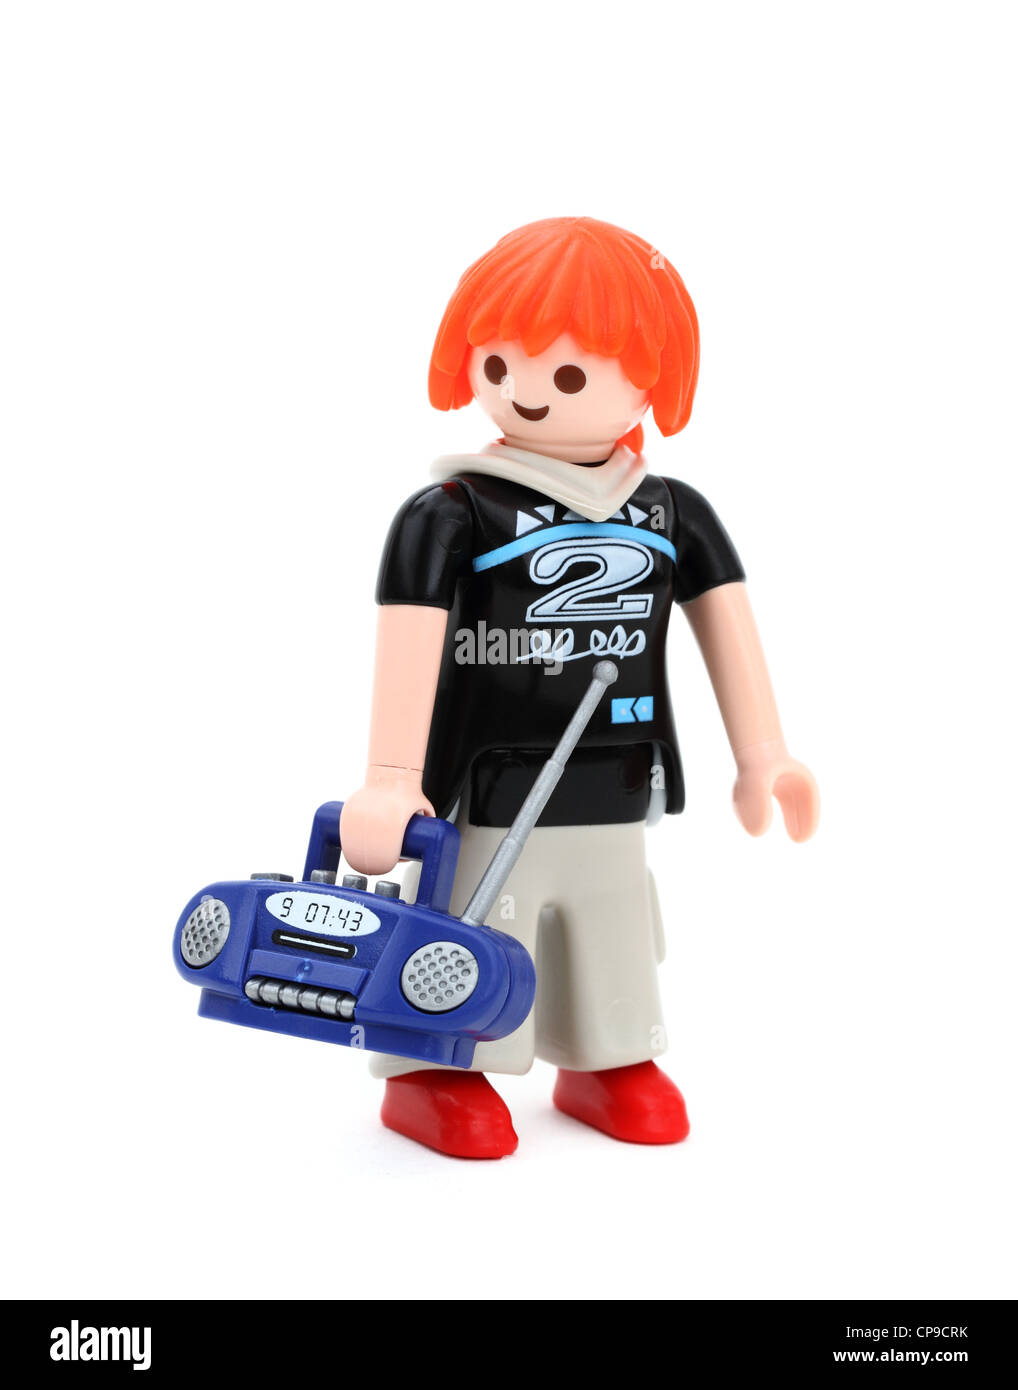 Playmobil-Spielzeug-Figur von einem Teen Mädchen mit roten Haaren tragen  einen Radio Stockfotografie - Alamy